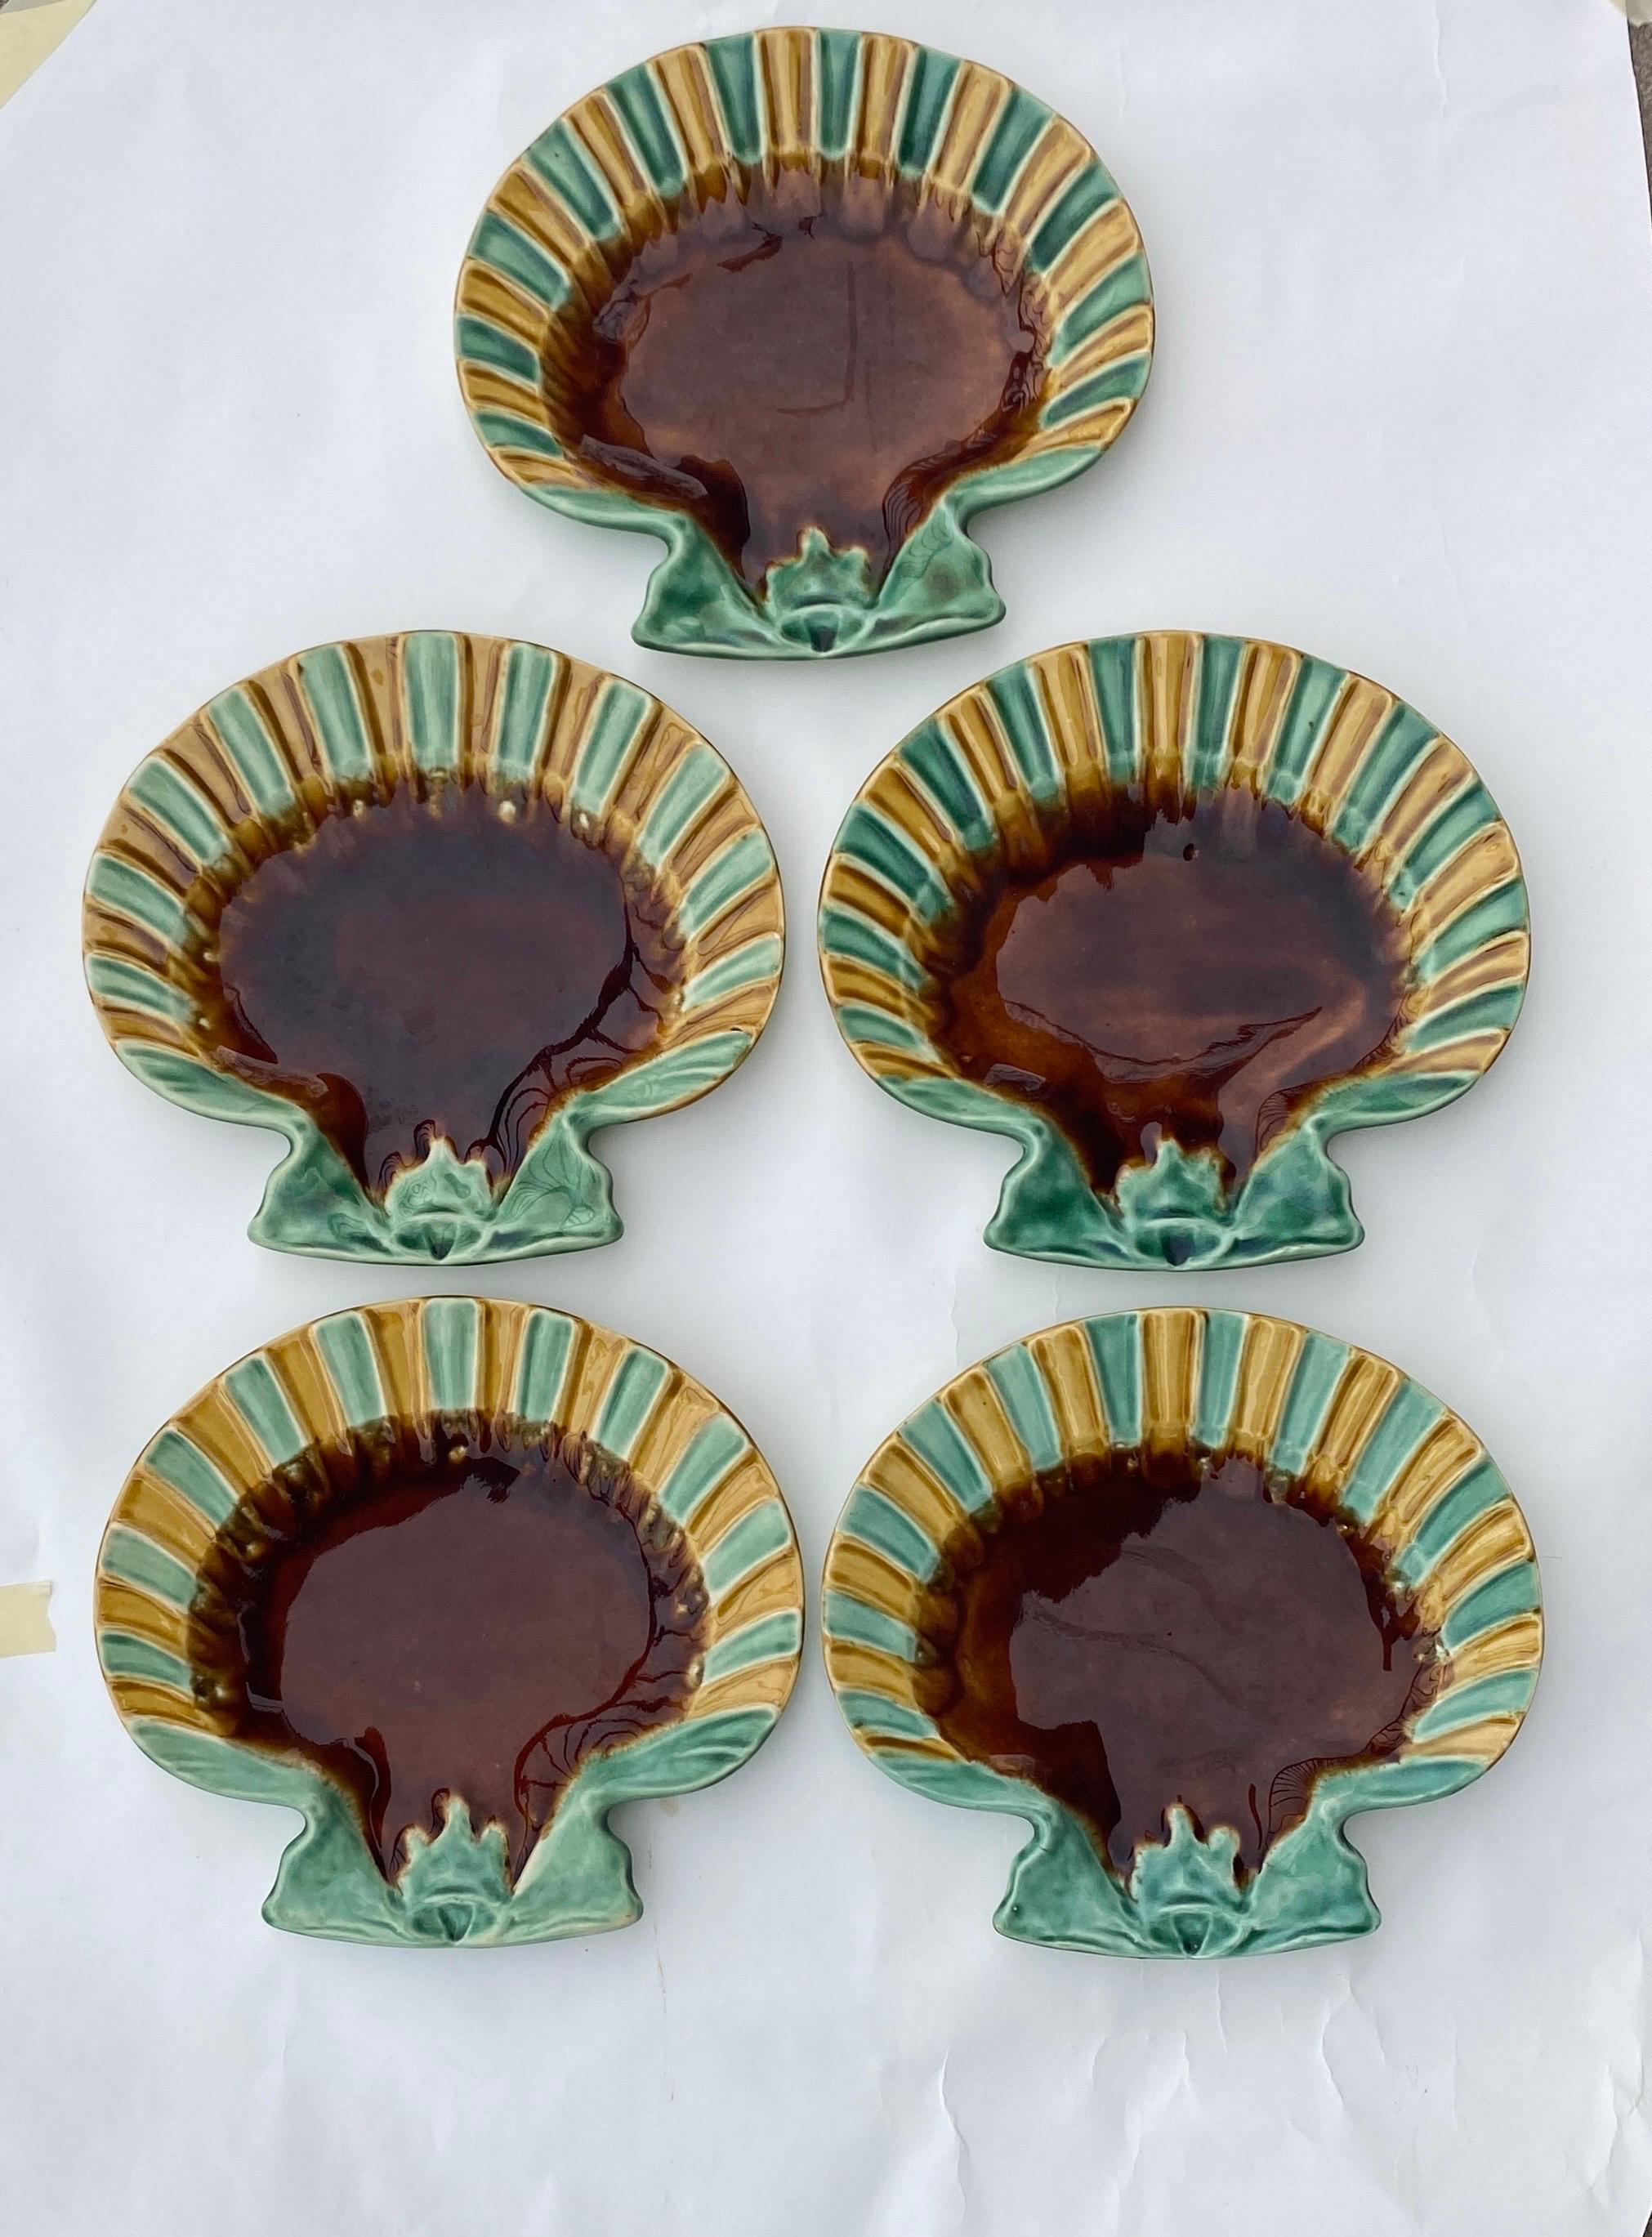 Très rare ensemble de 5 assiettes françaises en forme de coquille signées Choisy Le Roi vers 1890.